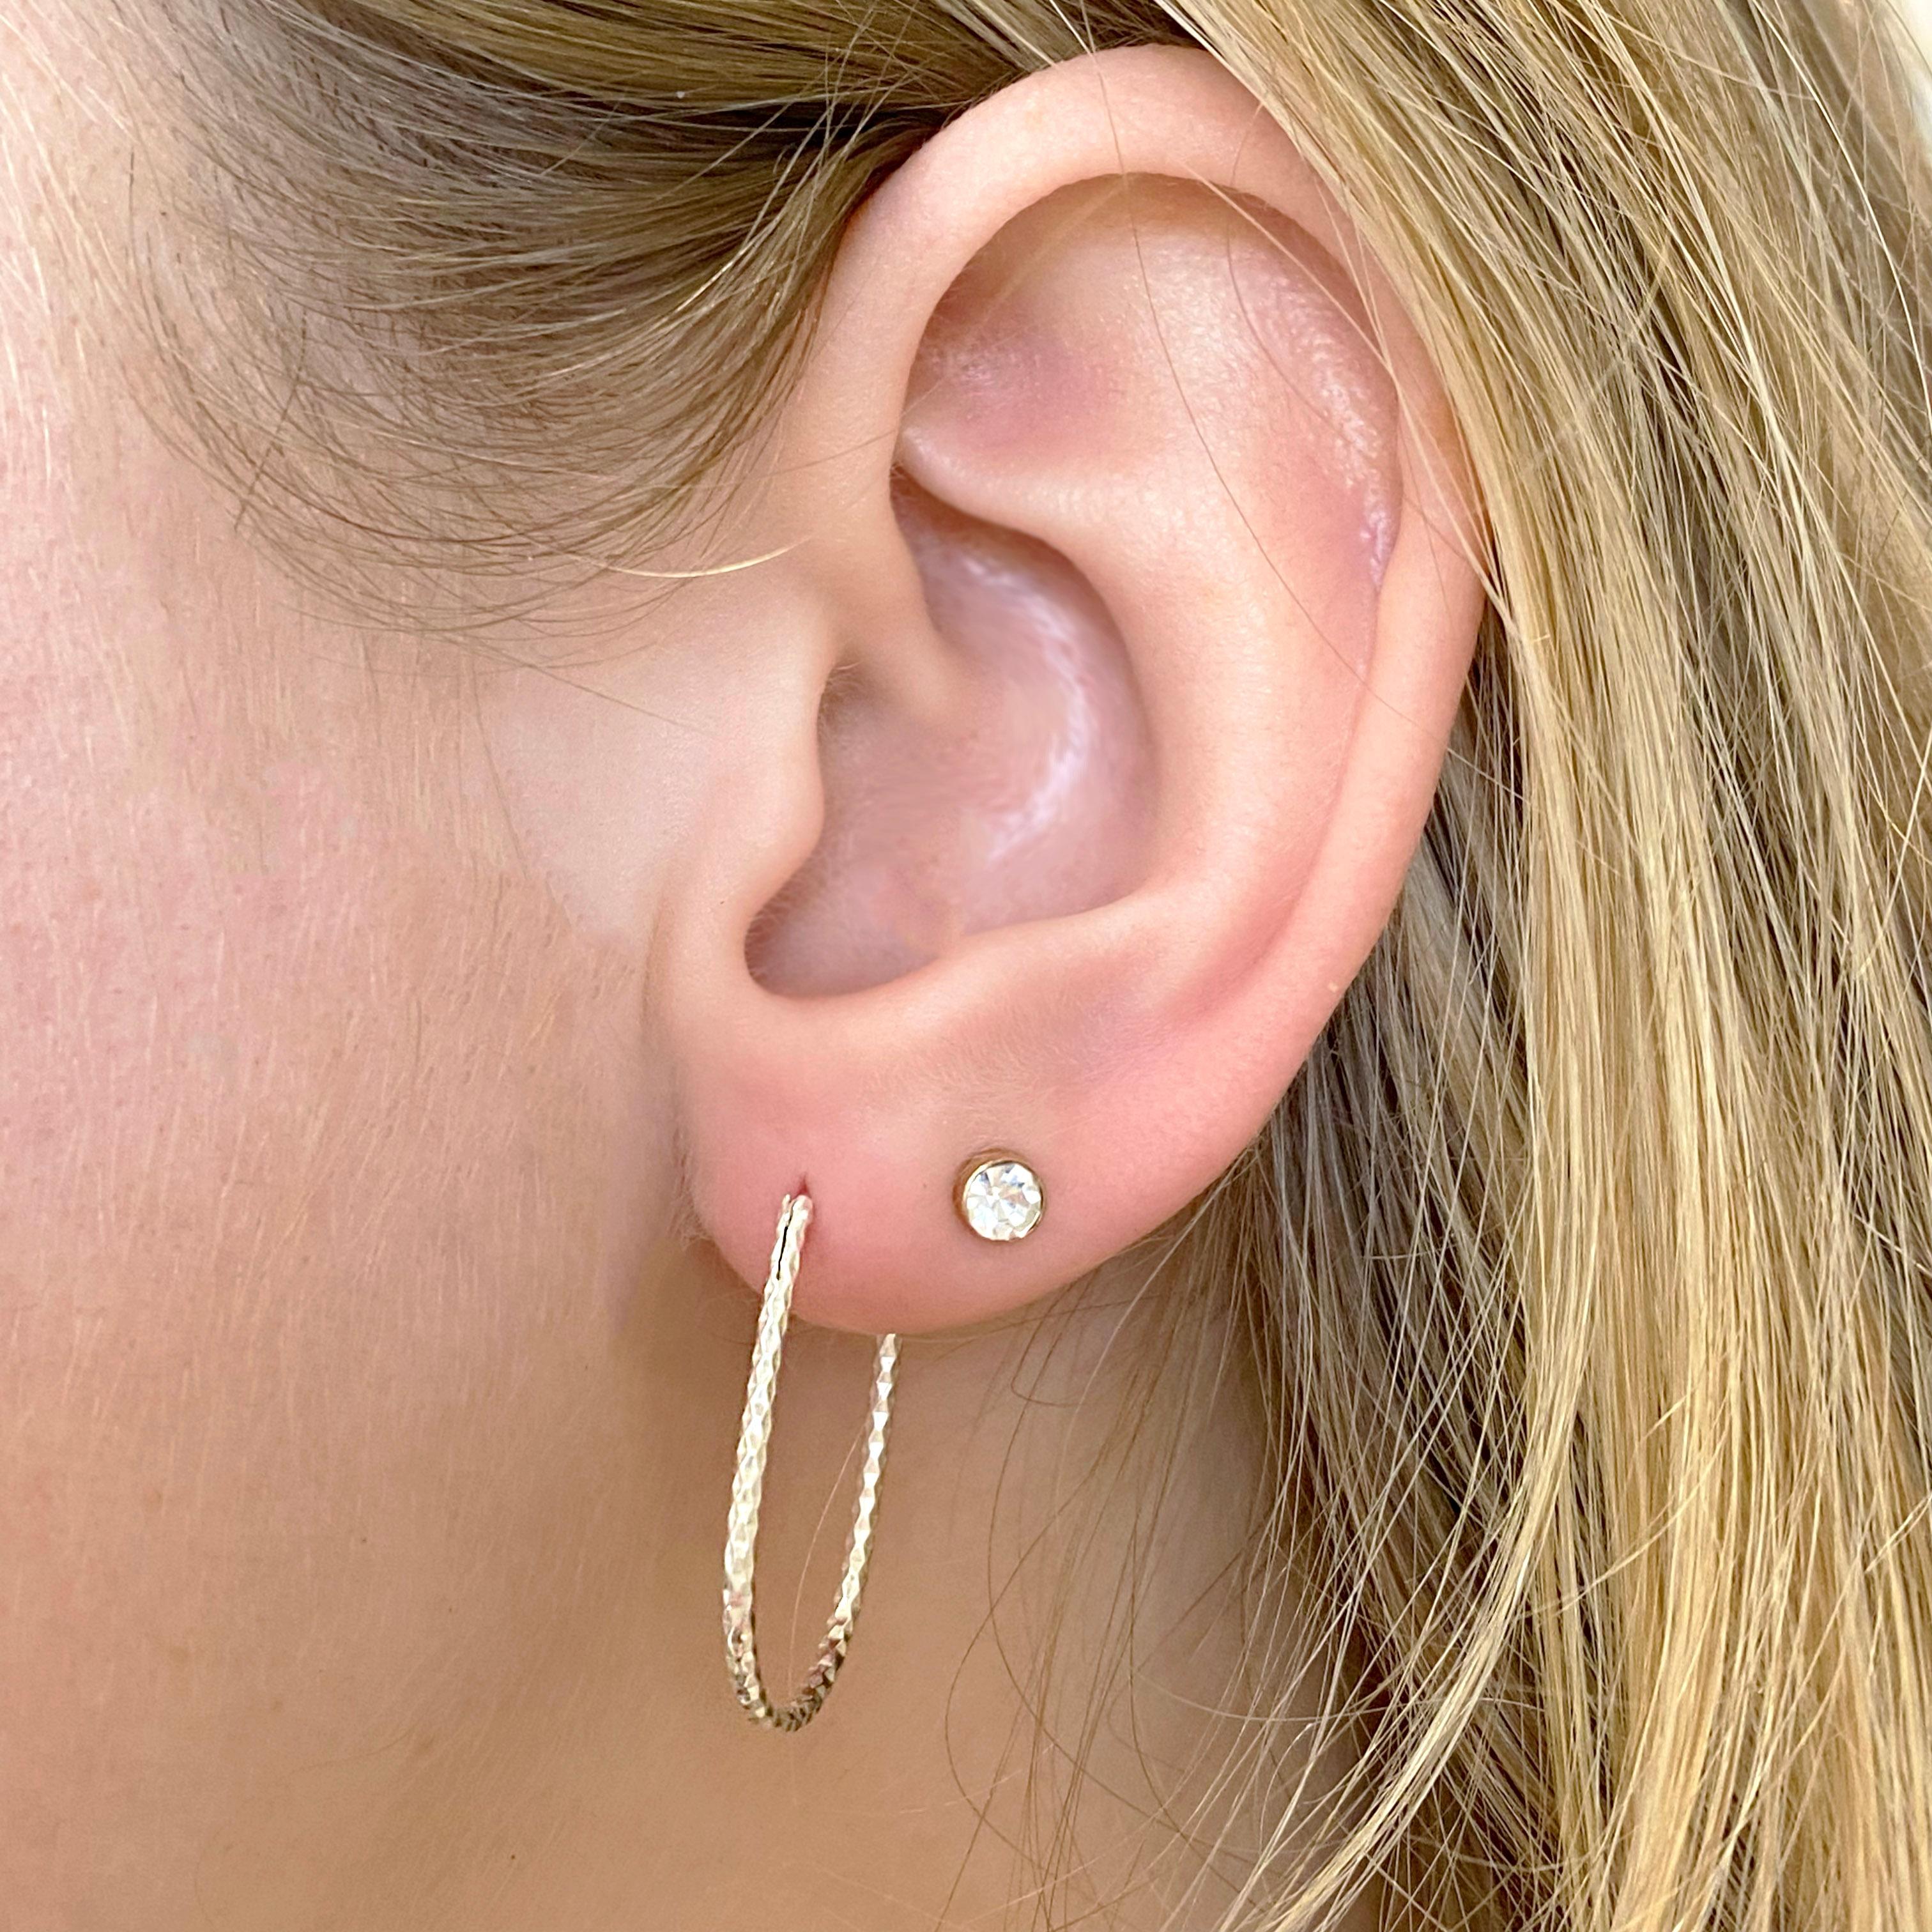 Die Details zu diesen wunderschönen Ohrringen sind unten aufgeführt:
1 Satz
Metallqualität: Sterling Silber
Ohrring Typ: Bügel
Ohrring Abmessungen; 1,5 Millimeter x 1,0 Zoll
Pfostentyp: Flexibler Pfosten mit verdeckter Spange